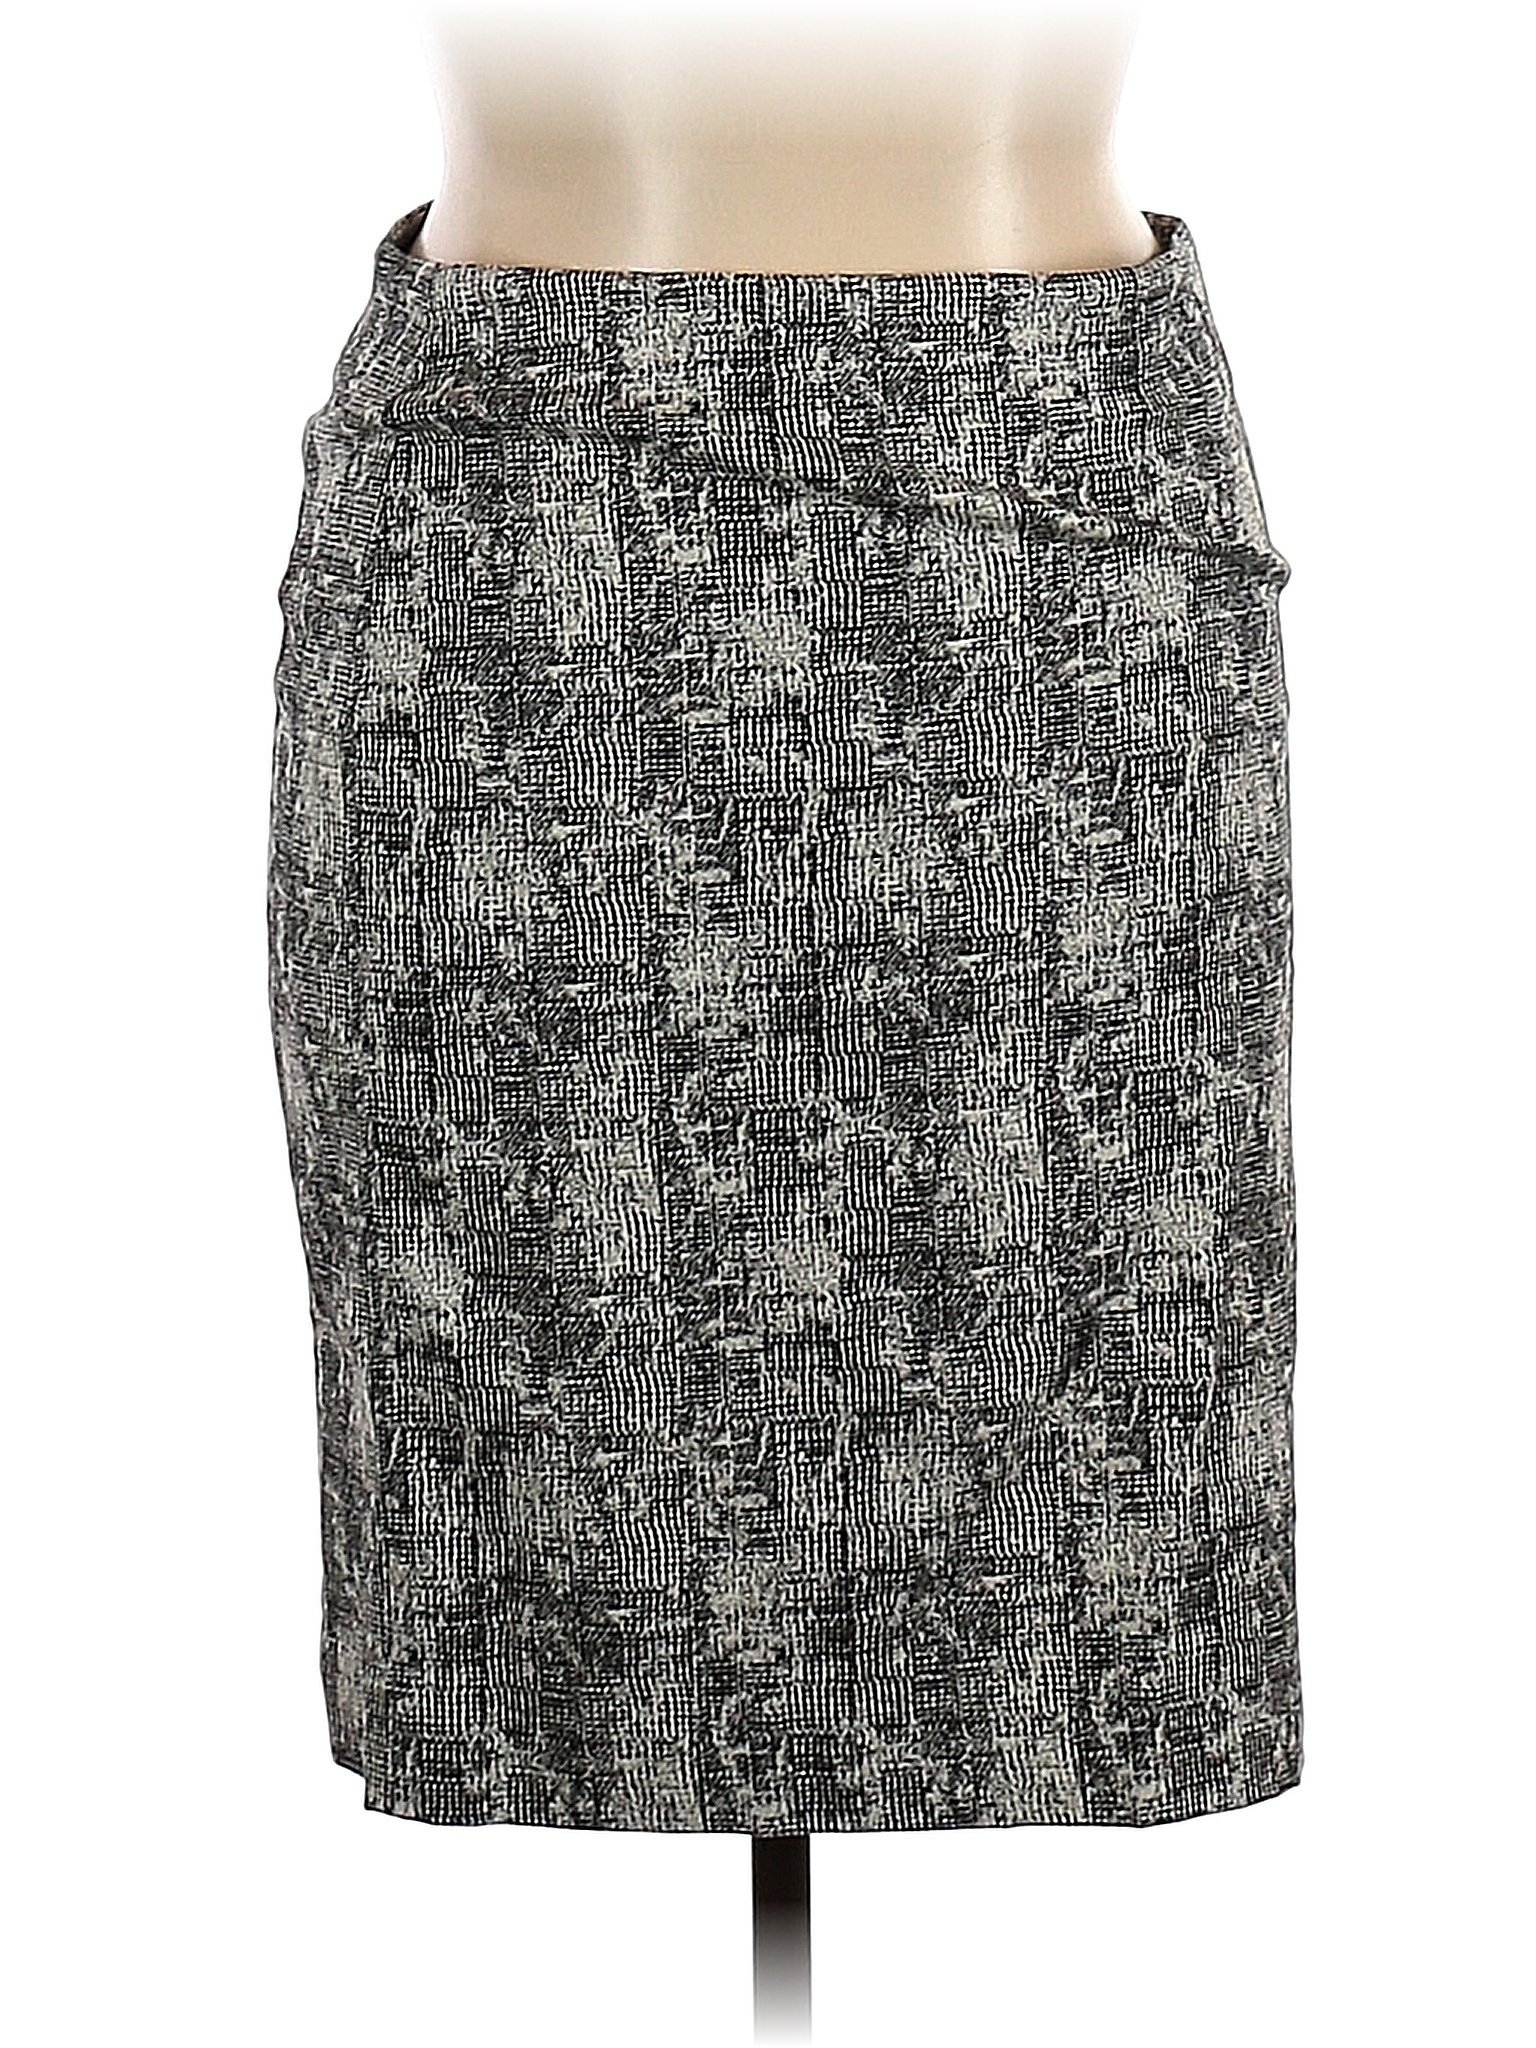 MM. LaFleur Ivory Formal Skirt Size 14 - 83% off | thredUP